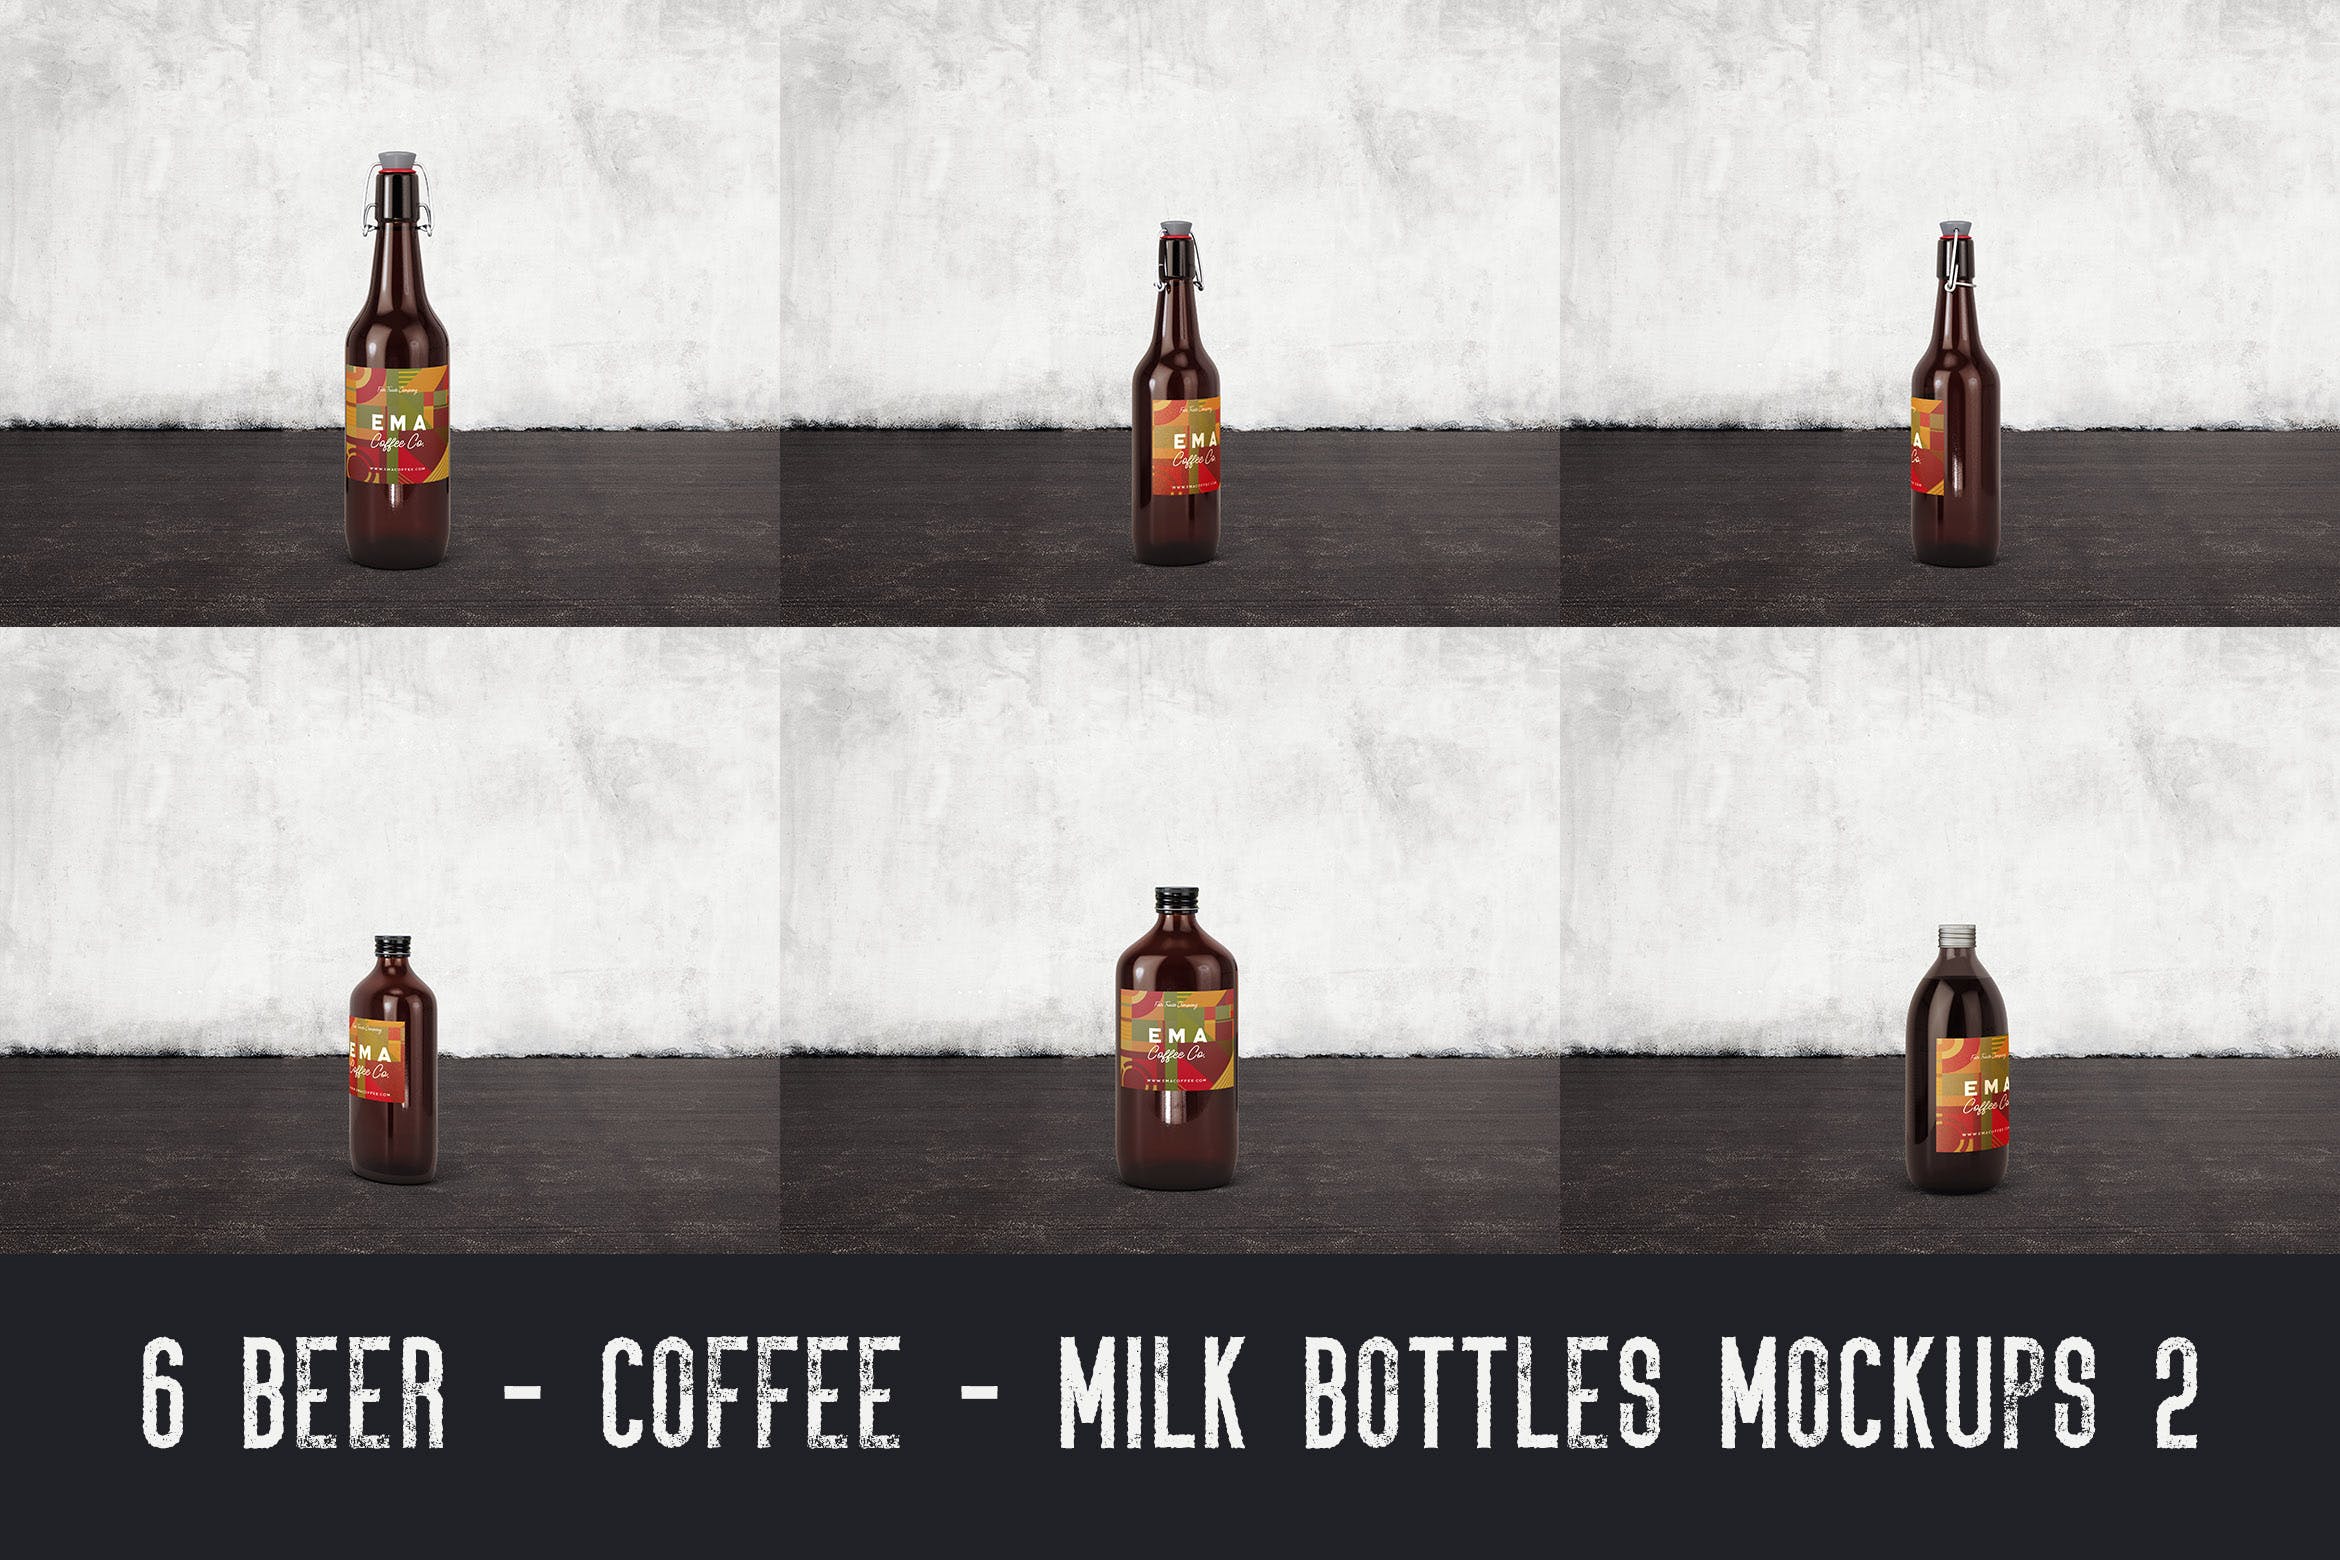 6个啤酒/咖啡/牛奶瓶外观设计蚂蚁素材精选v2 6 Beer Coffee Milk Bottles Mockups 2插图